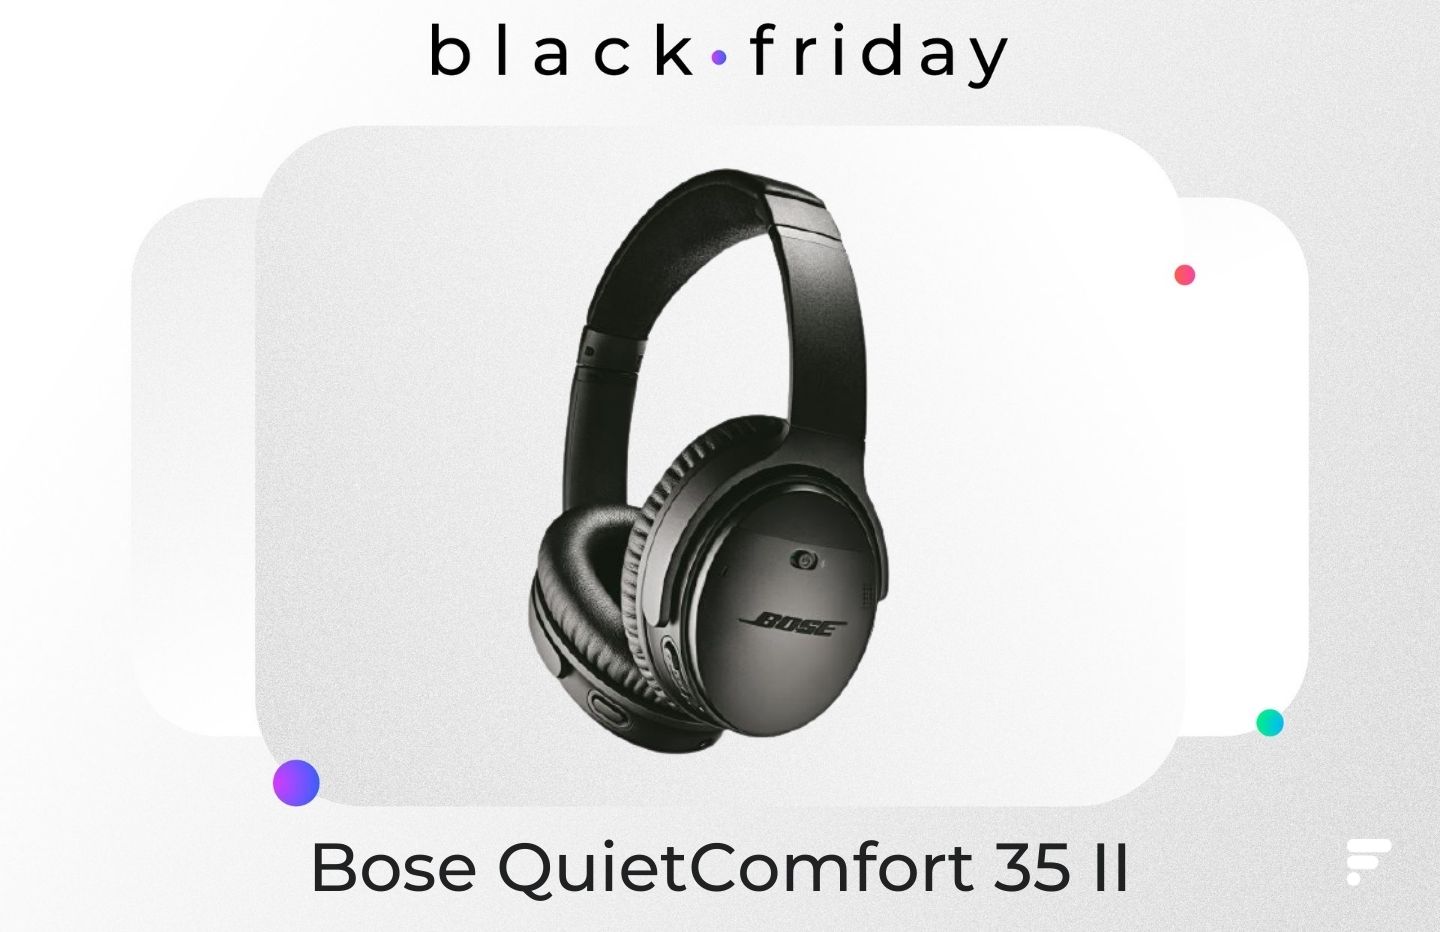 L’incontournable Bose QC 35 II est à seulement 159 € pour le Black Friday